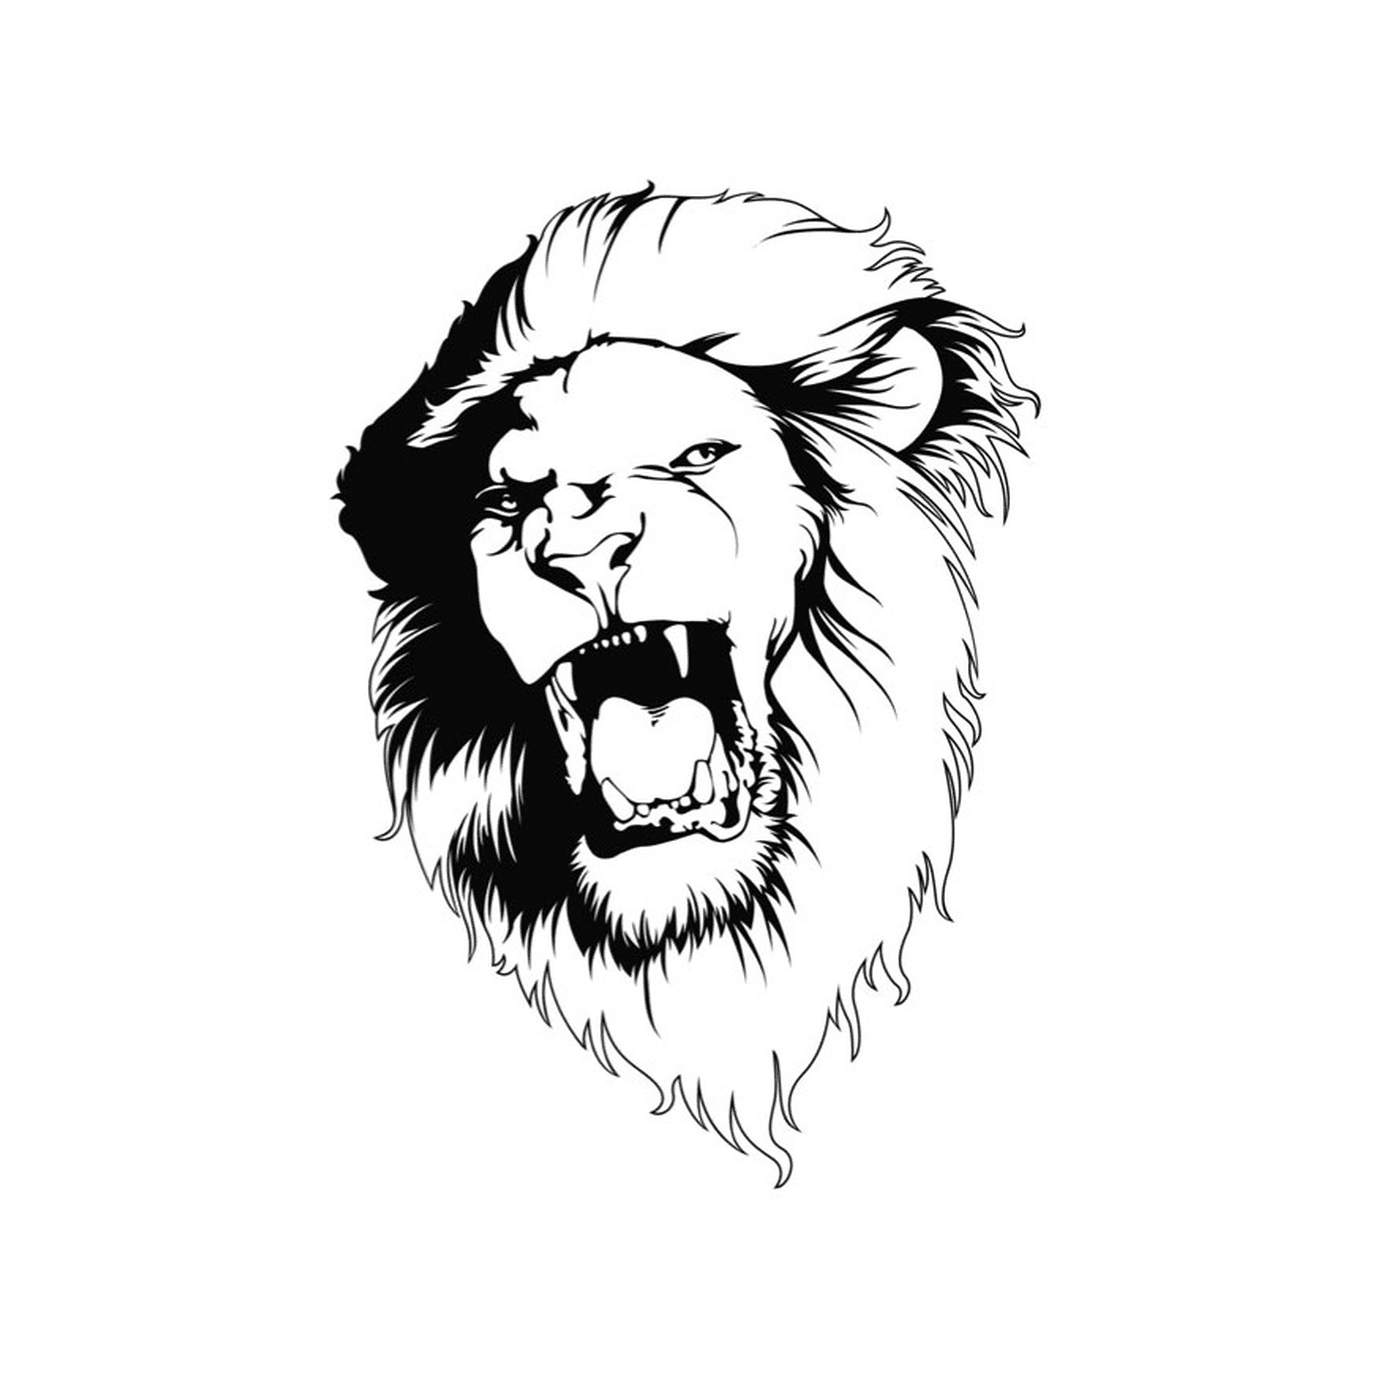  狮子的雄性头目 